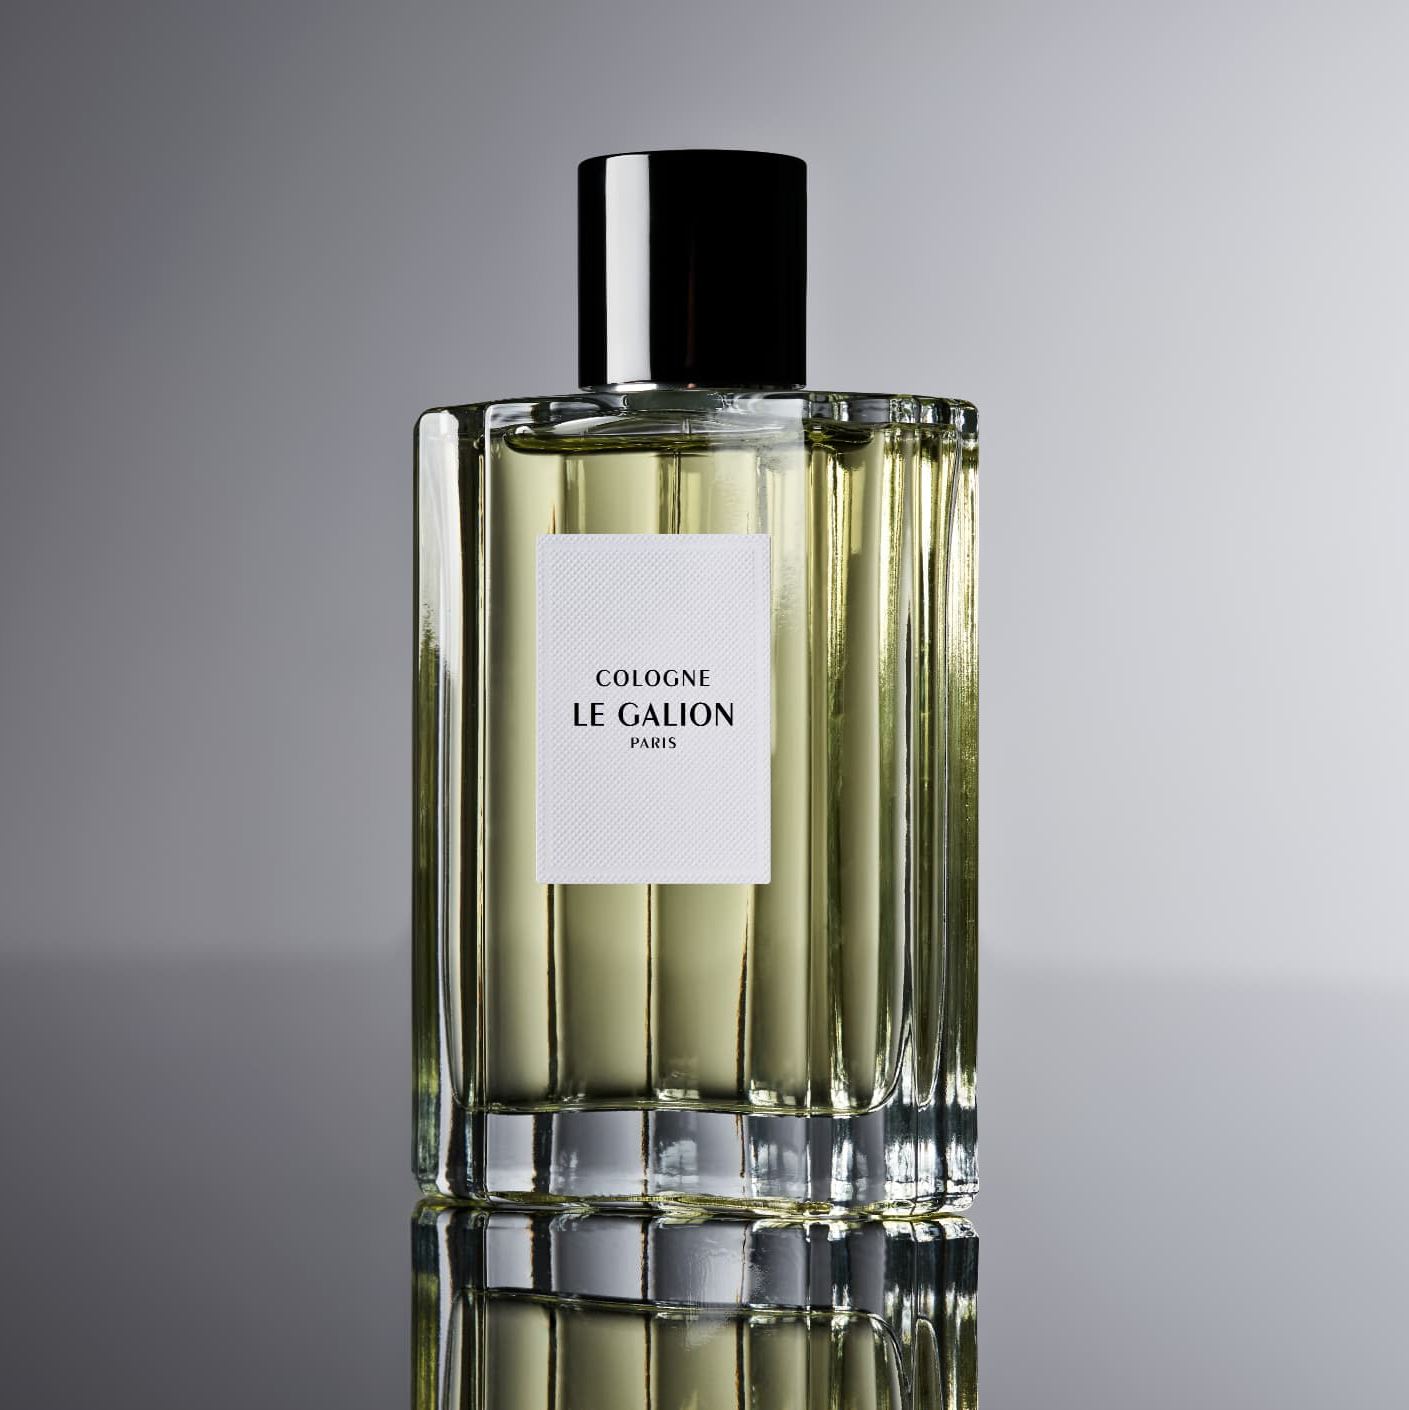 Parfum Special for Gentlemen - Le Galion - Boutique Officielle